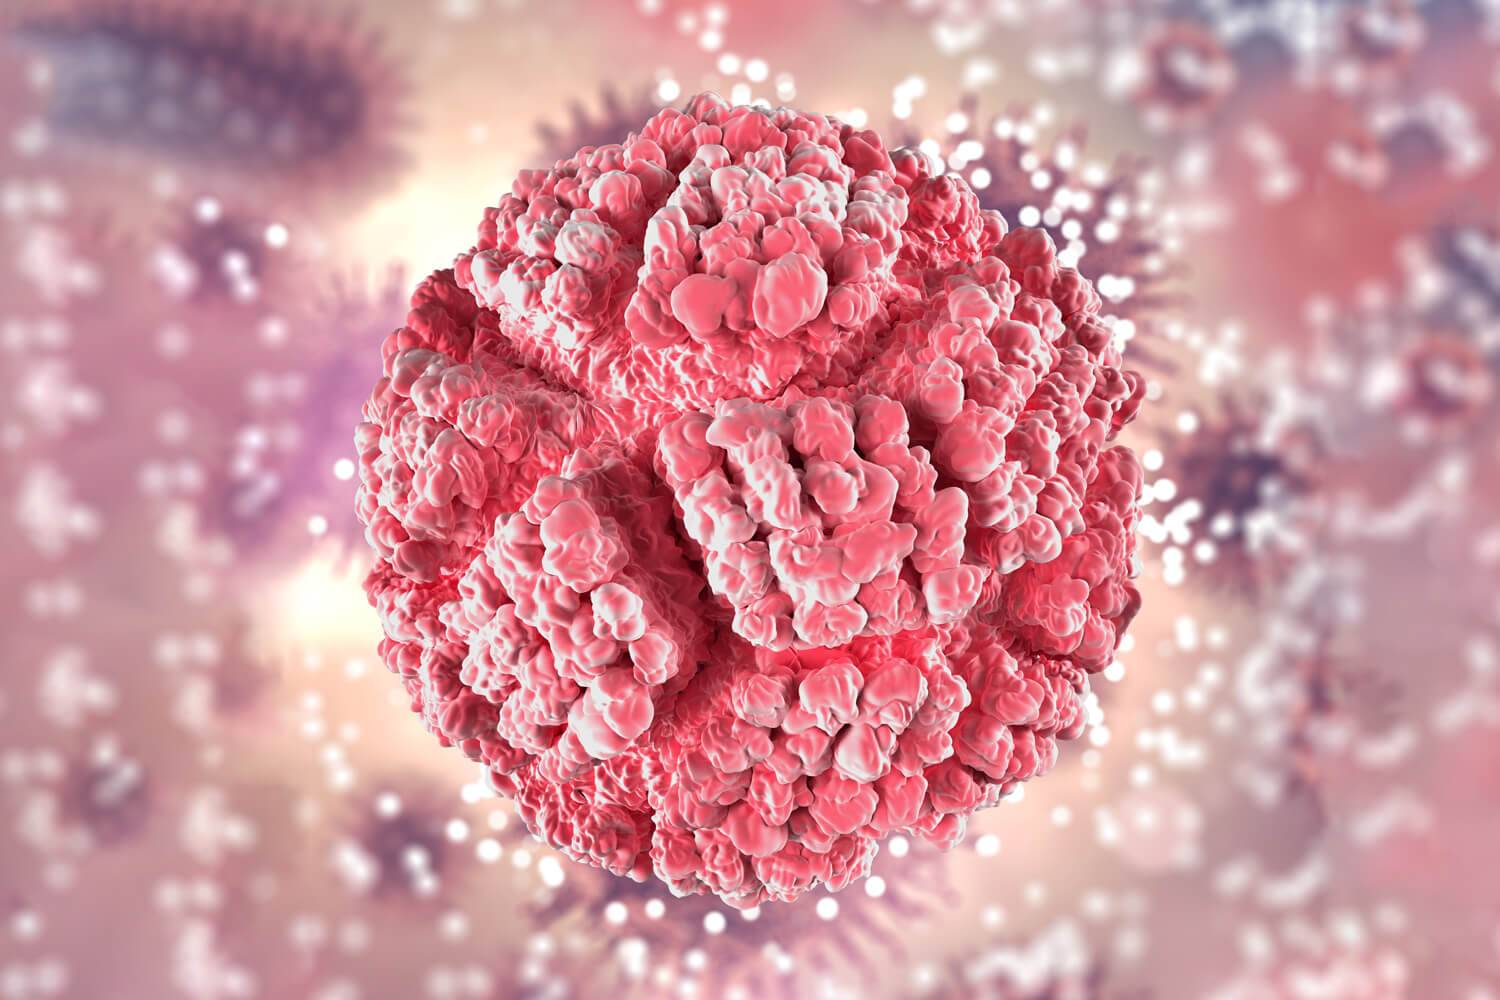 Papillomavirus humains, les hommes constituent un réservoir important